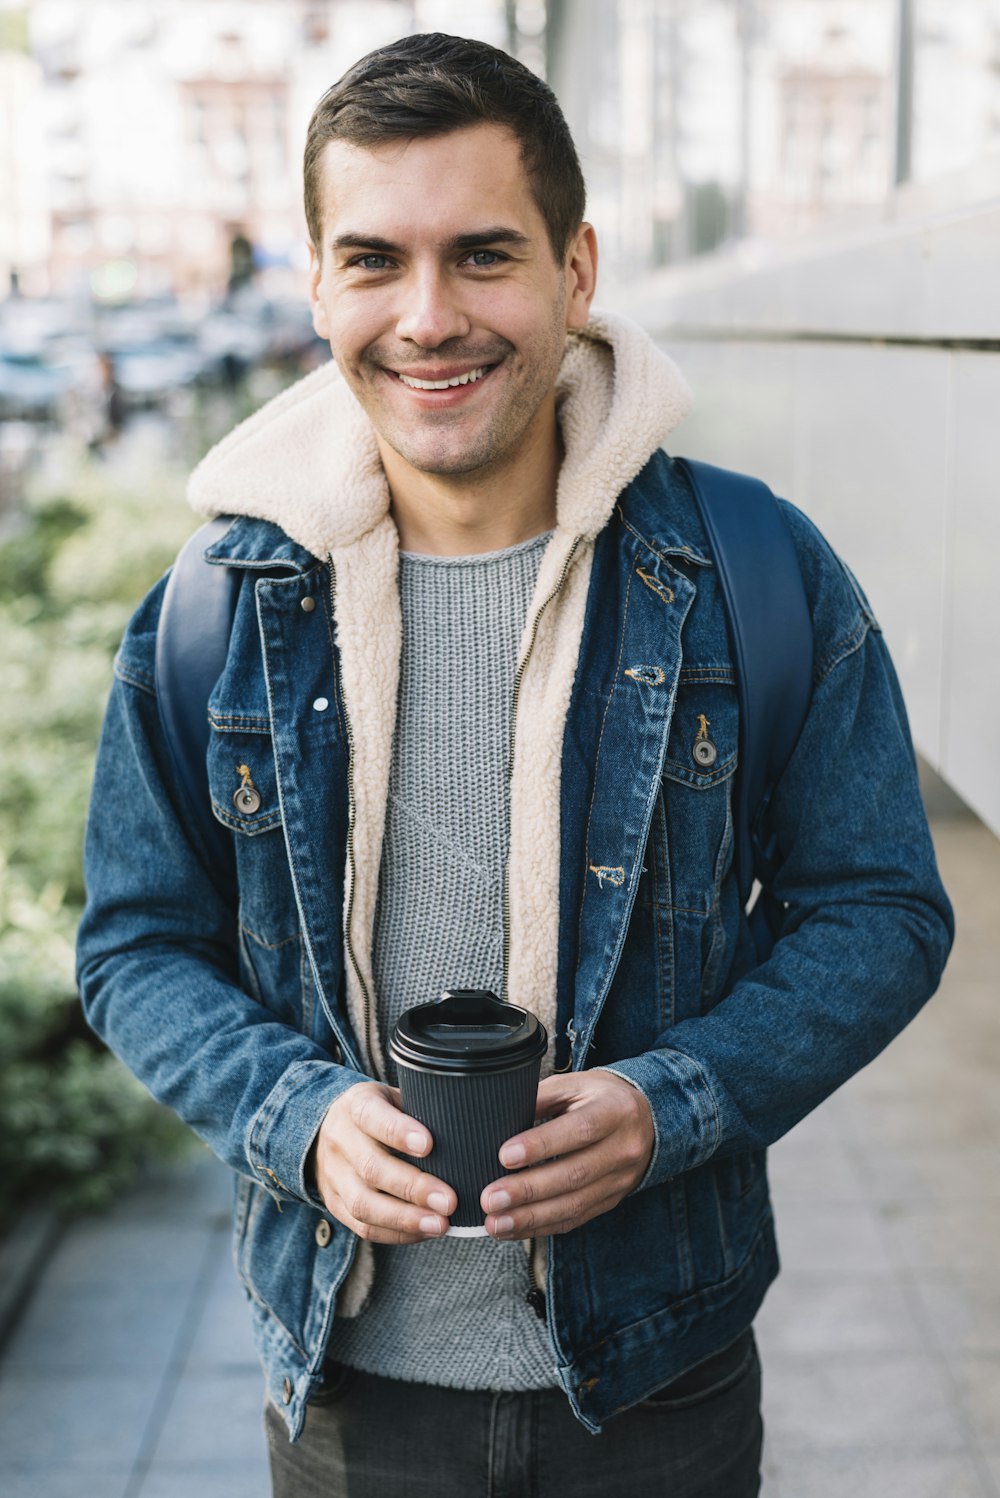 Ein Mann, der eine Tasse Kaffee hält und lächelt